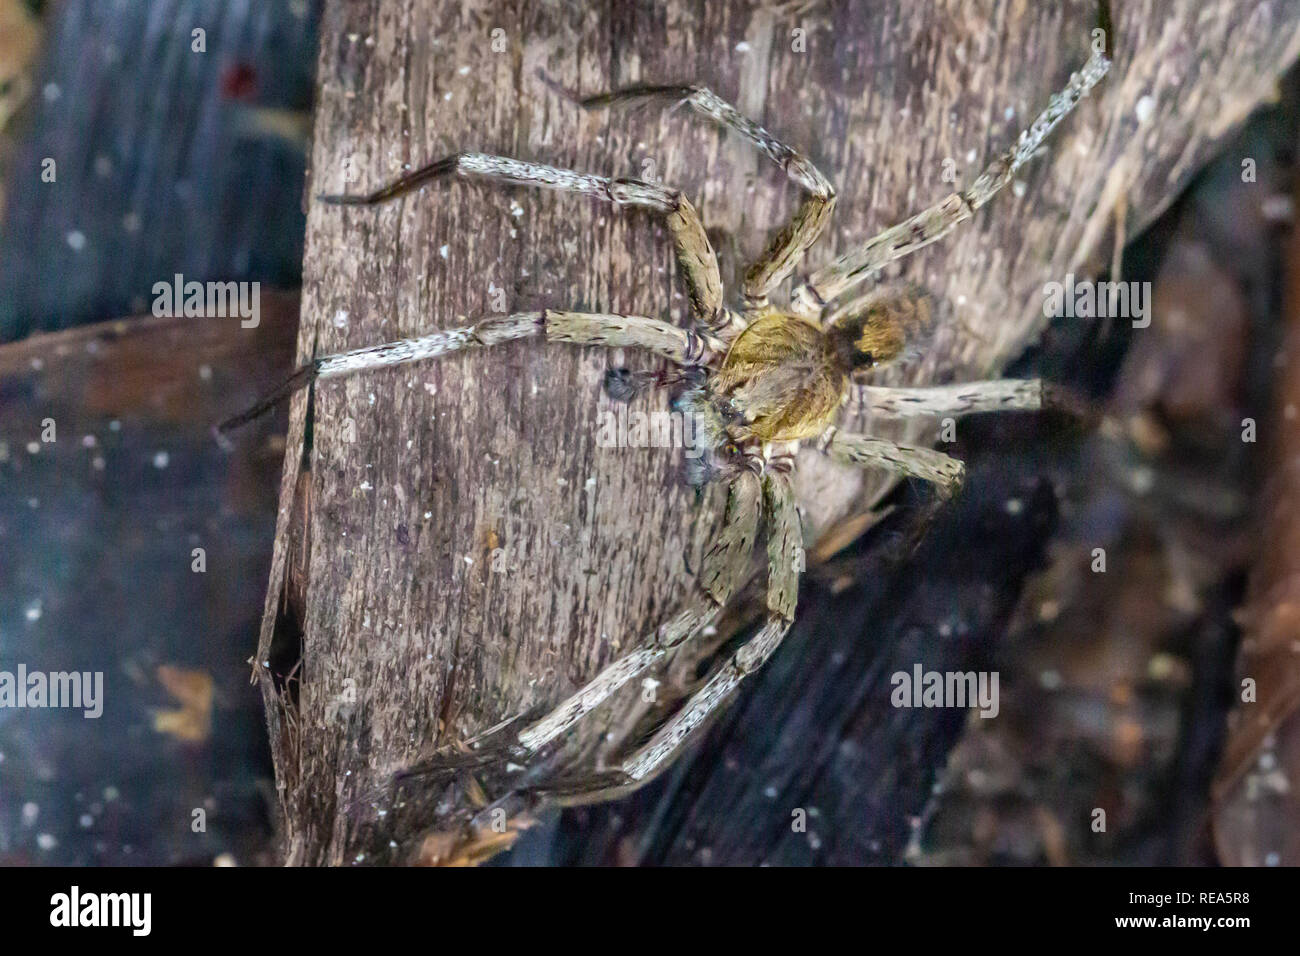 L'errance brésilien spider, Réserve nationale de Tambopata. Phoneutria boliviensis, spider le plus mortel du monde. Banque D'Images